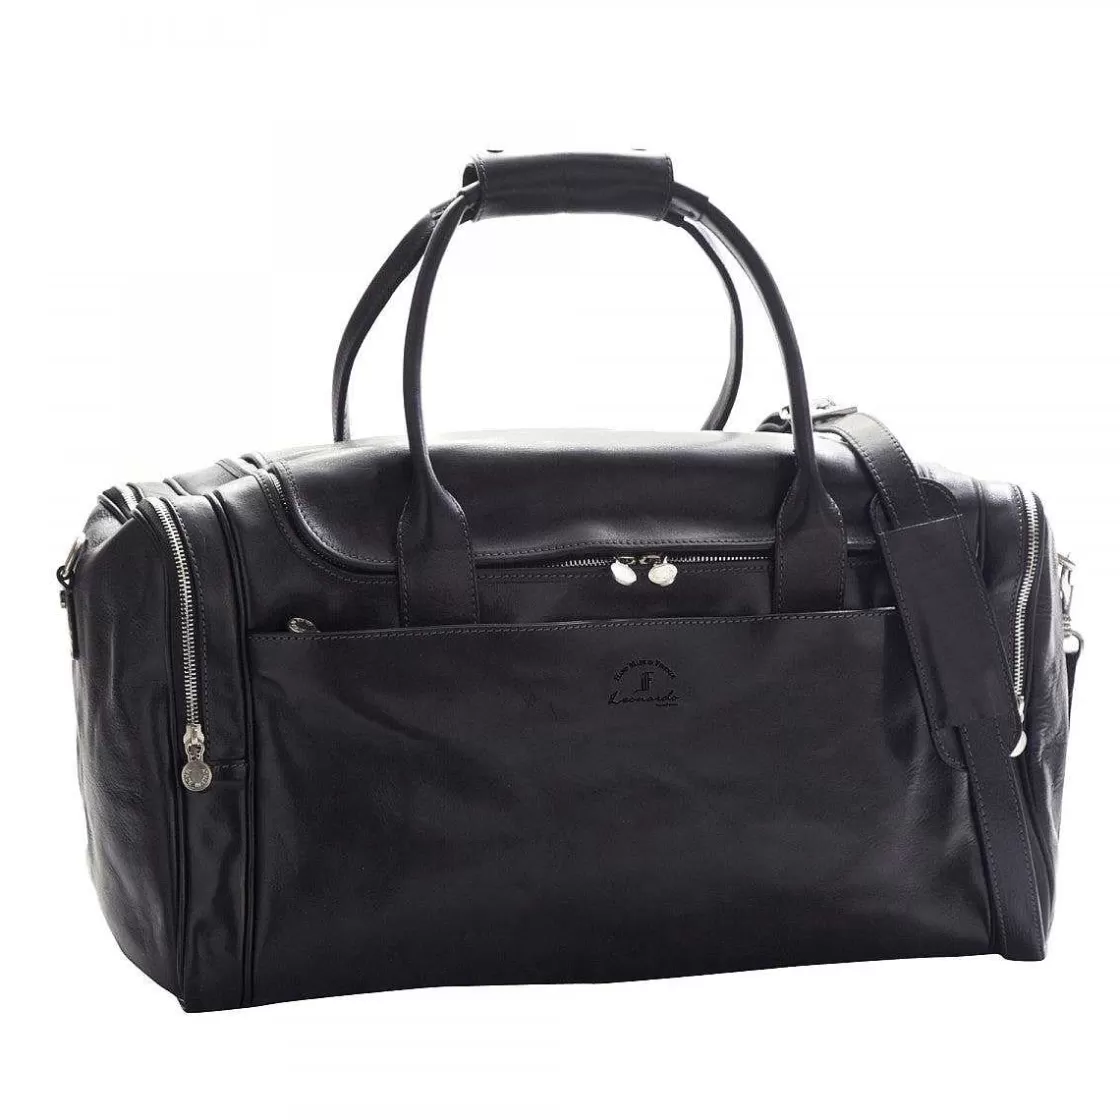 Leonardo Explorer Medium Travel Bag In Full-Grain Leather Double Zip Front And Side Pockets Adjustable Shoulder Strap Best